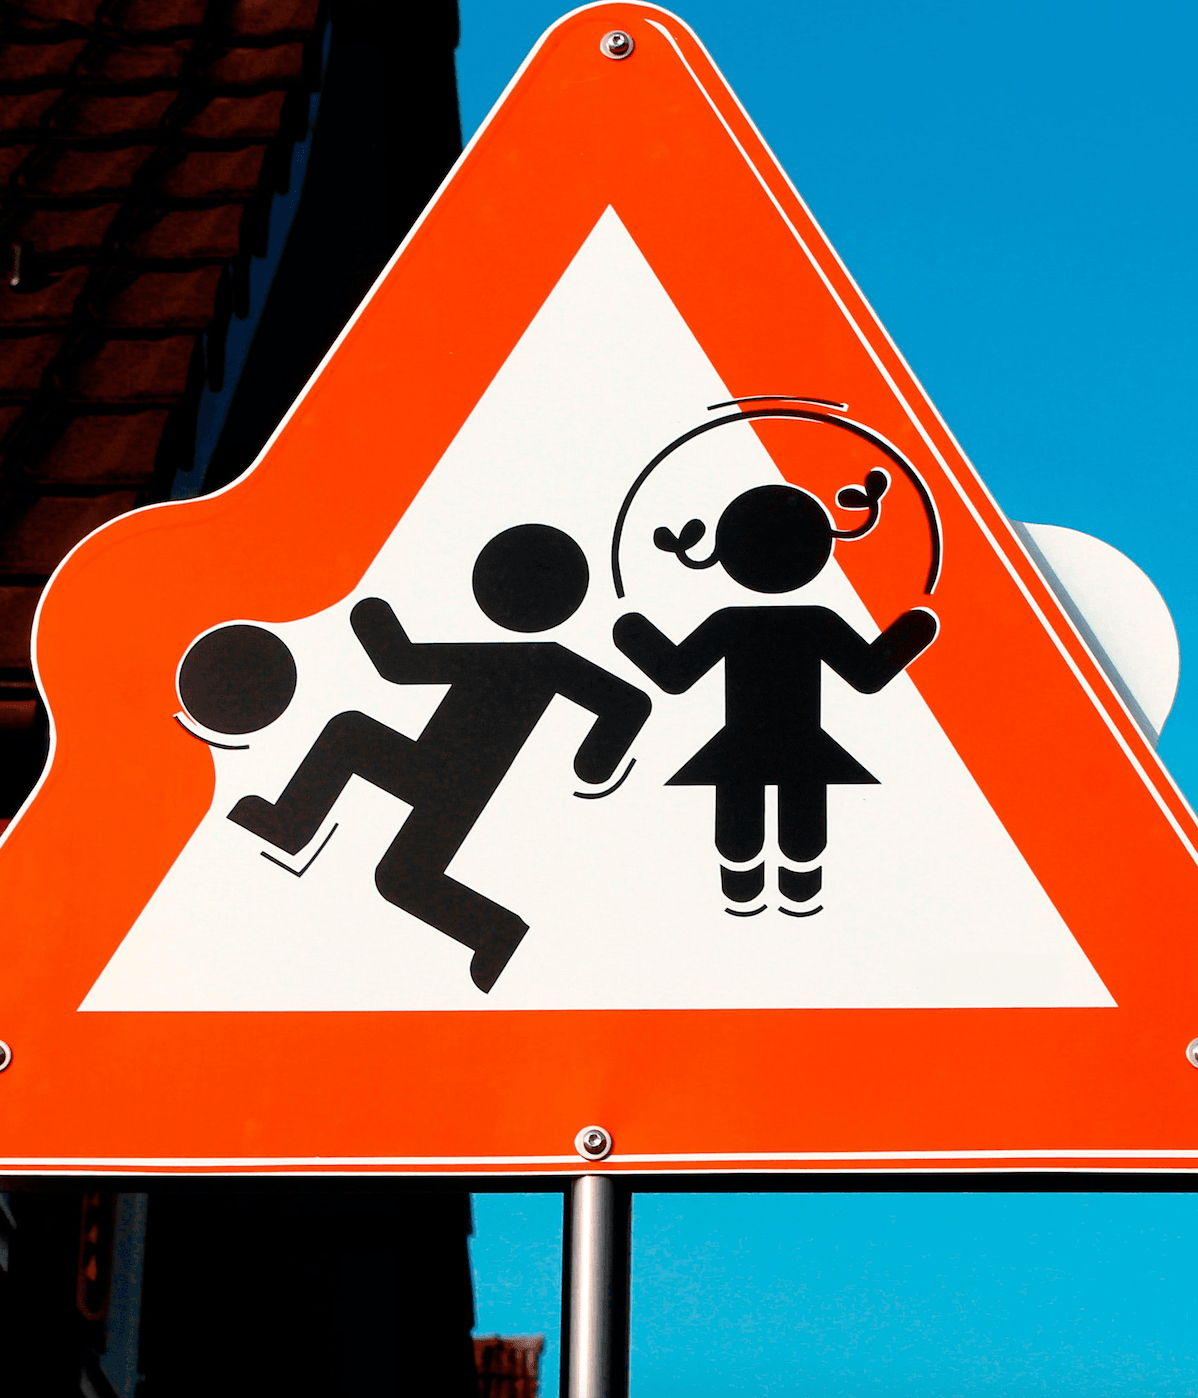 Lavoro minore: un cartello di cautela raffigura bimbi che giocano